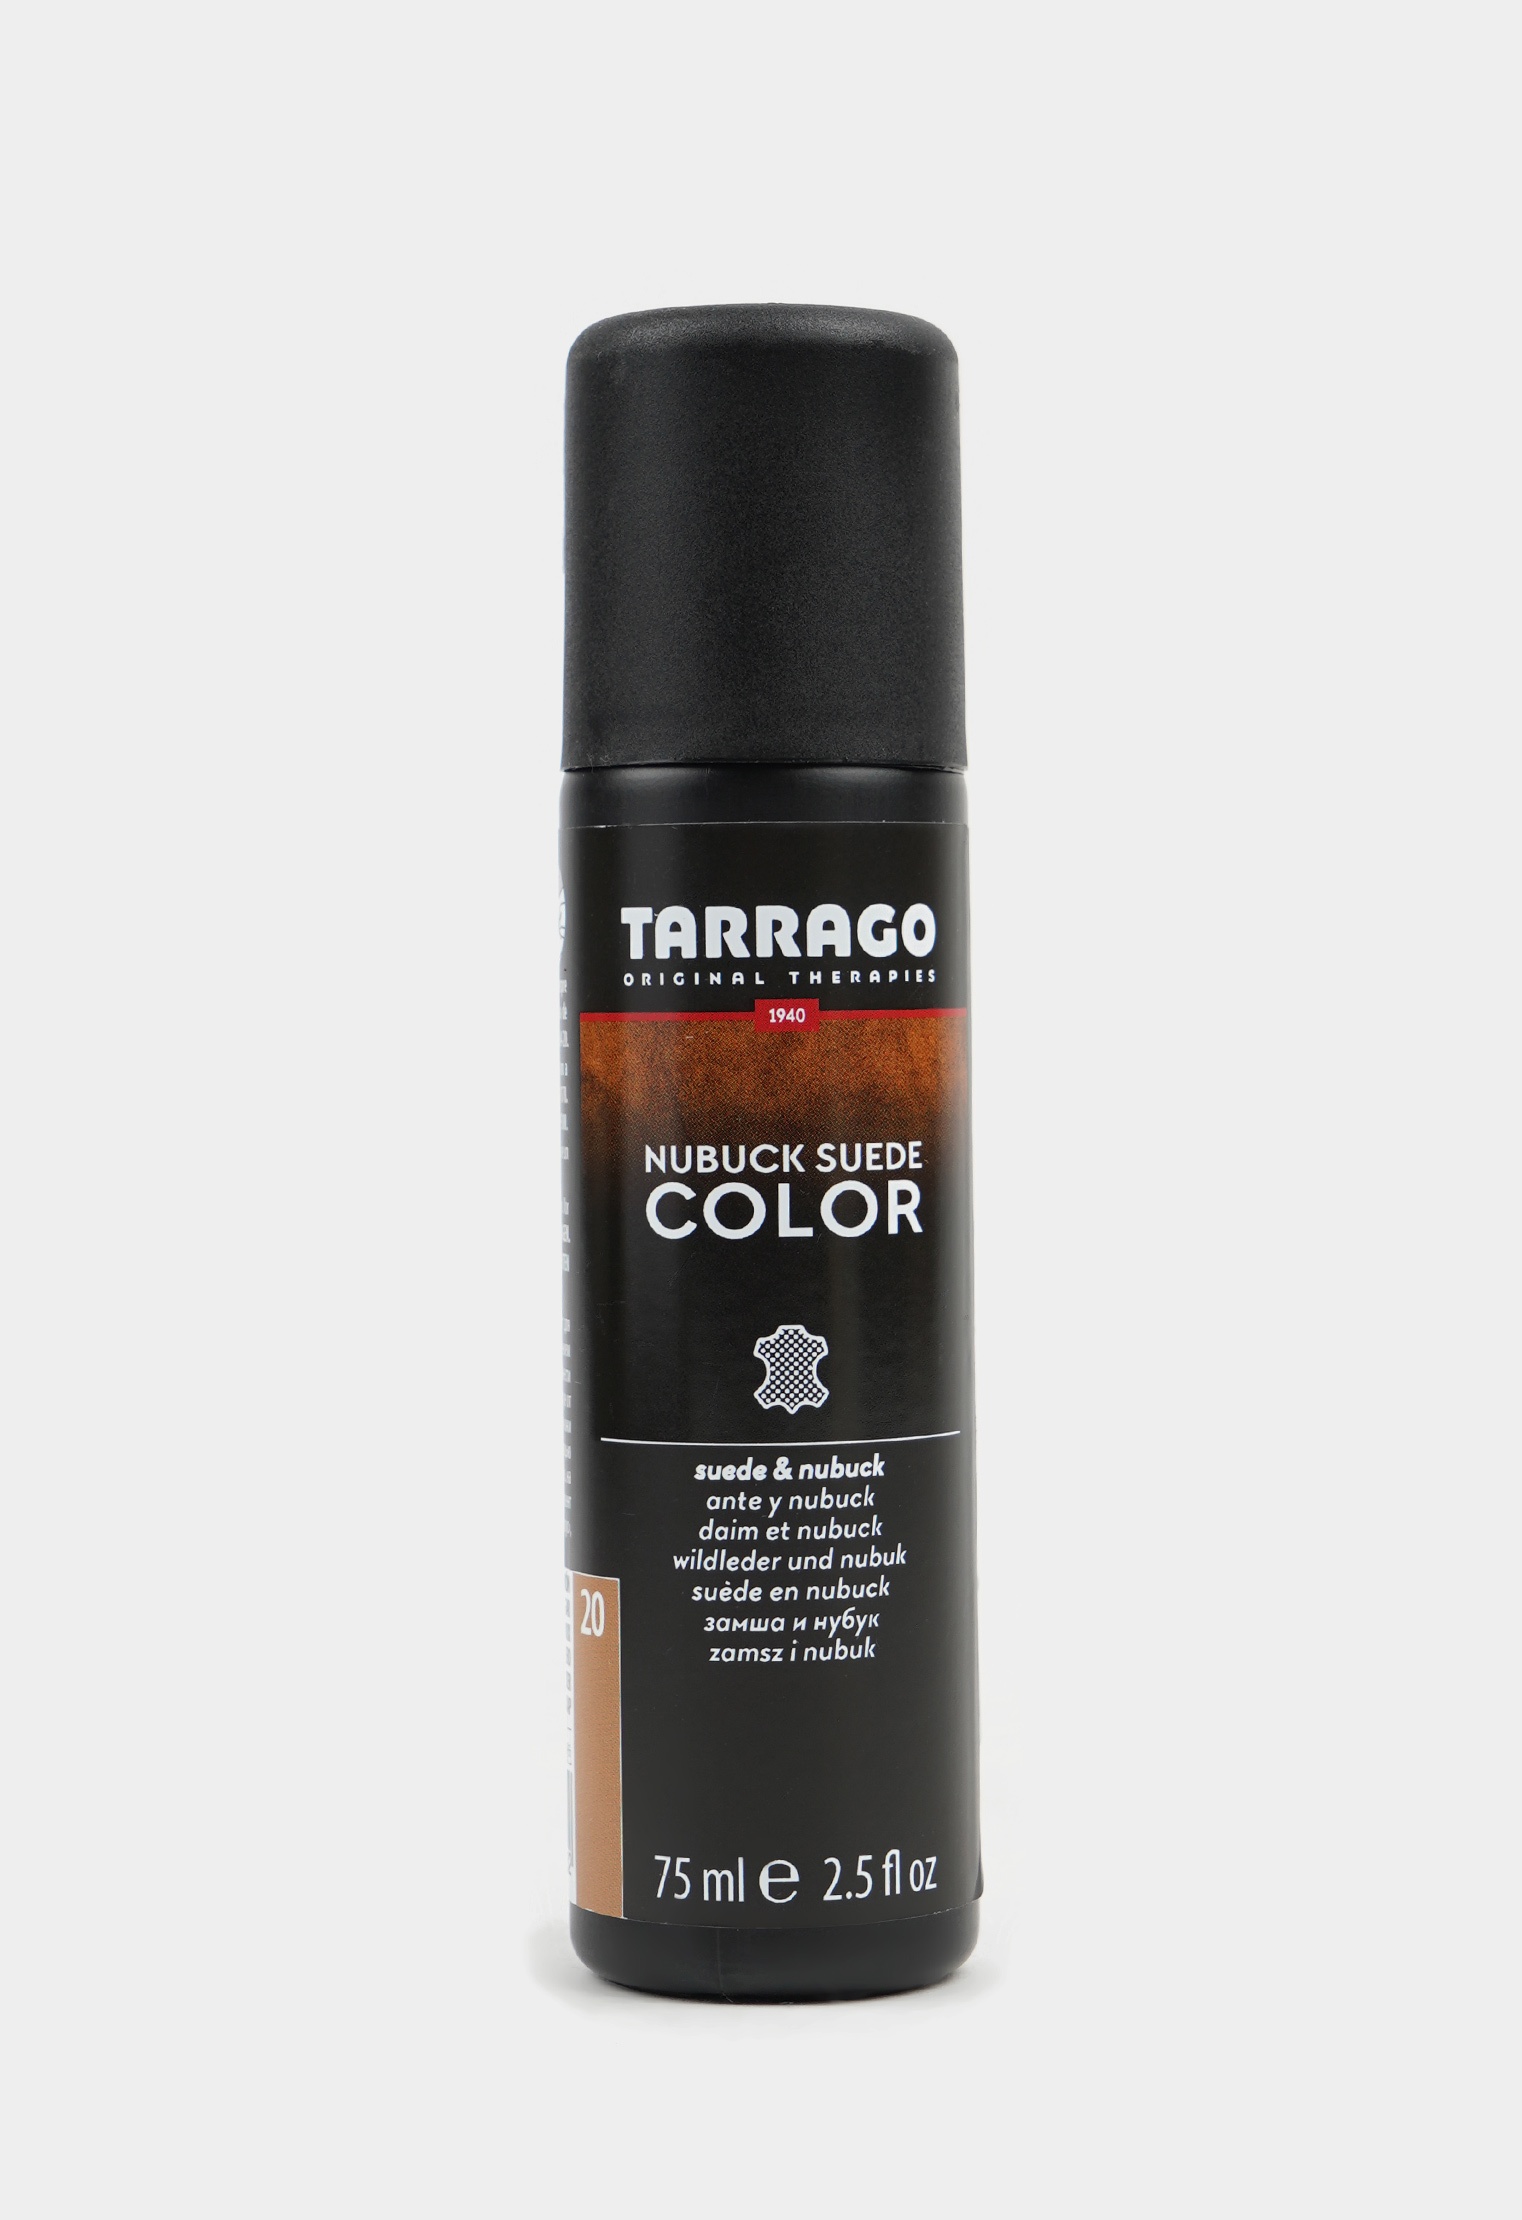 Аэрозоли для восстановления цвета 20-8905 TARRAGO - 020 Краситель для замши и нубука, NUBUCK COLOR, флакон, 75мл. (brown sugar) краска для обуви tarrago охра краска для замши tarrago nubuck color